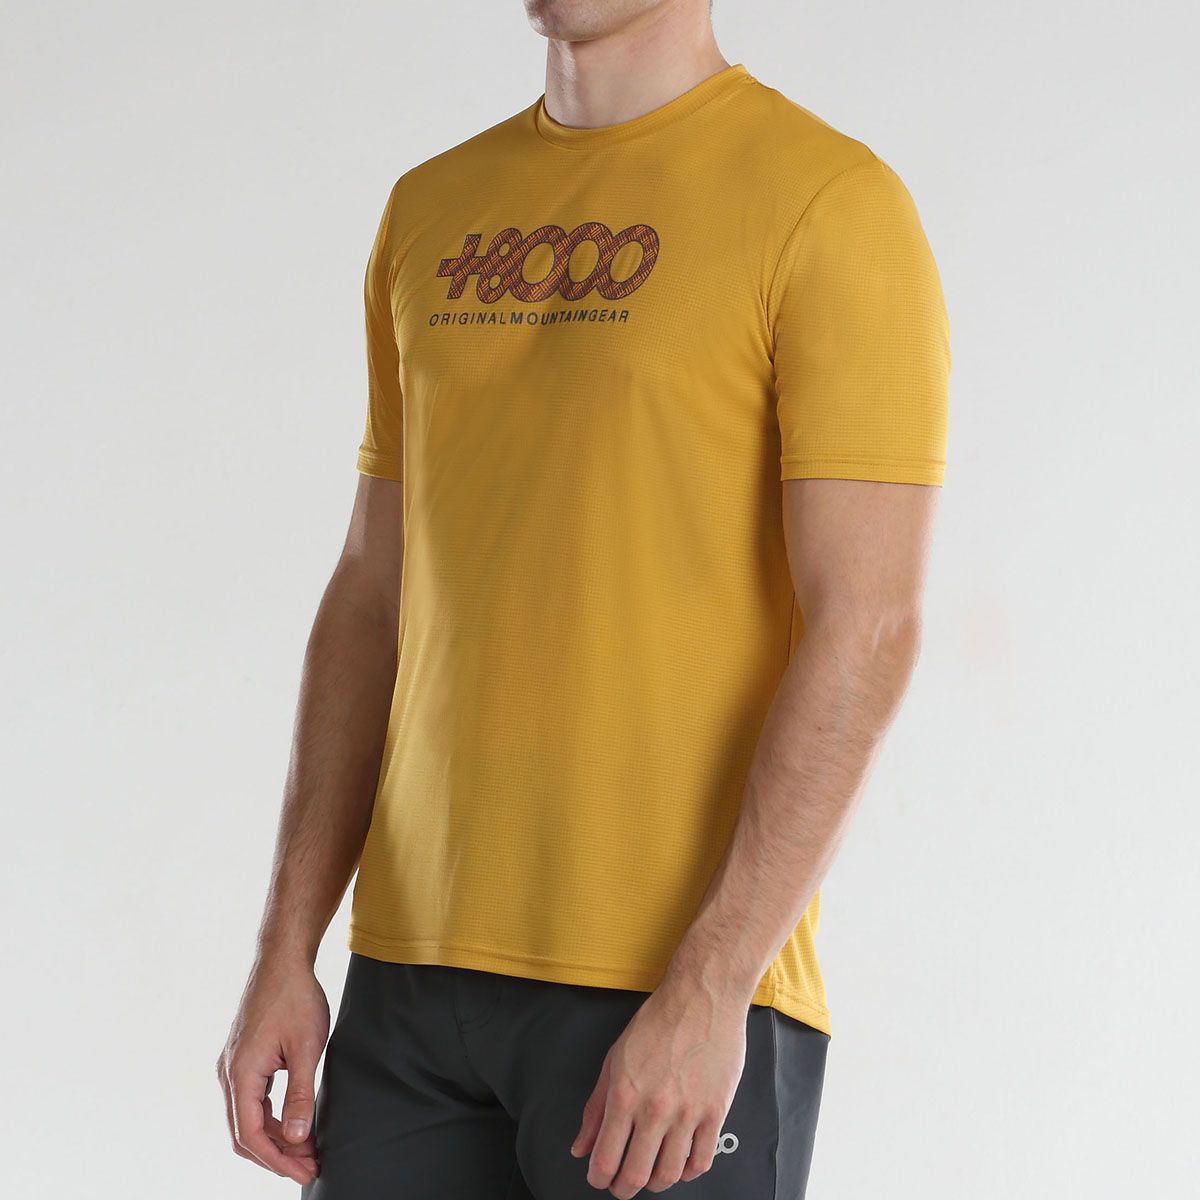 Camiseta hombre +8000 USAME (4 COLORES)